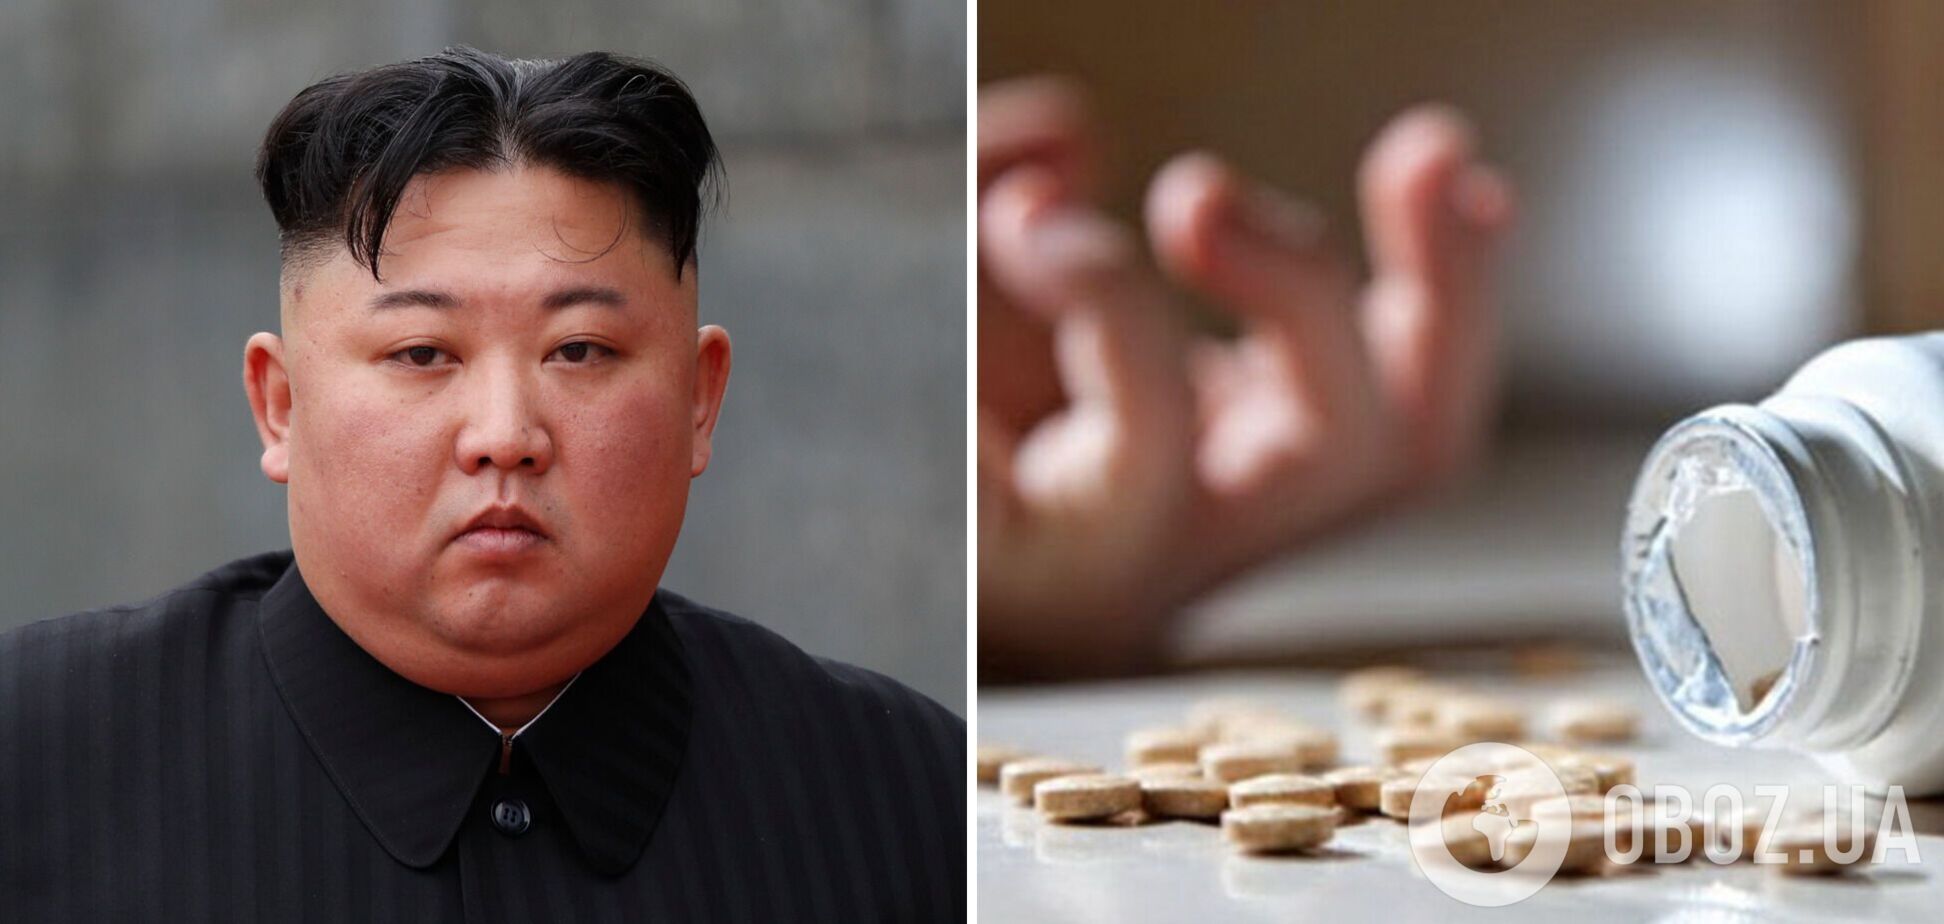 Ким Чен Ын запретил самоубийства в Северной Корее: их приравняли к 'измене социализму' – СМИ